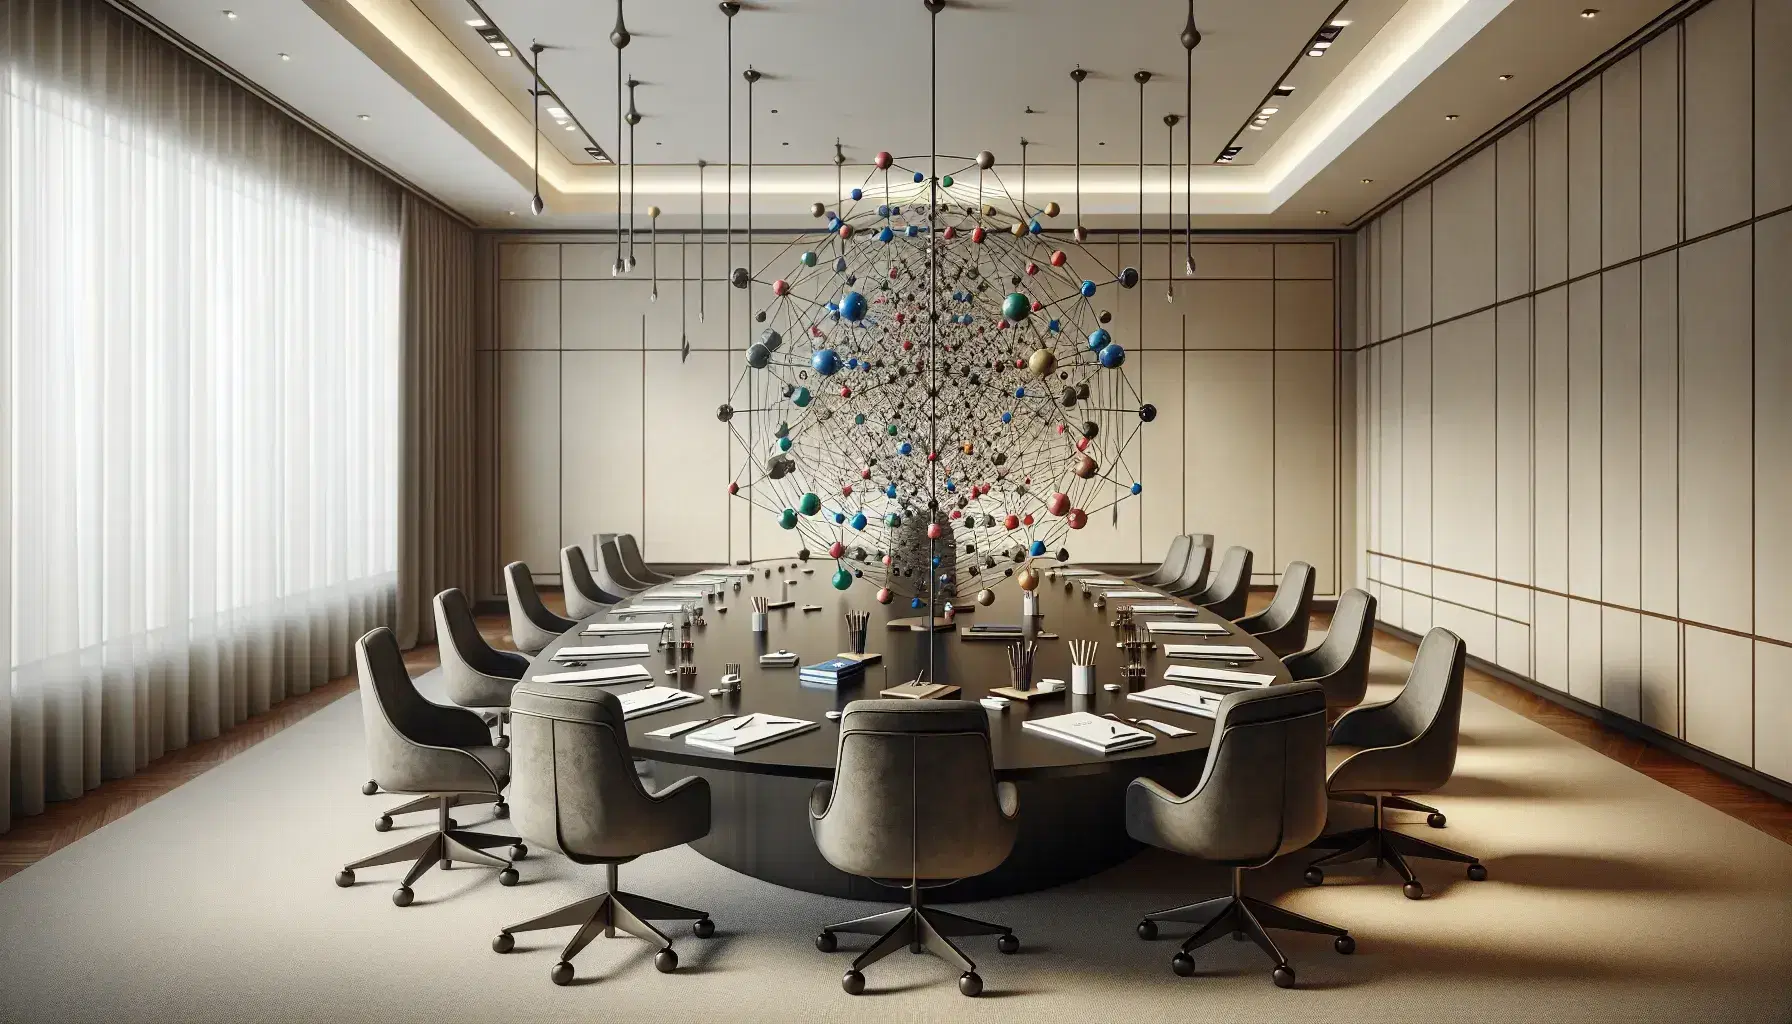 Sala de reuniones espaciosa con mesa ovalada de madera, sillas ergonómicas grises, carpetas de colores, útiles de escritura y modelo abstracto en el centro, iluminada y con vista urbana.